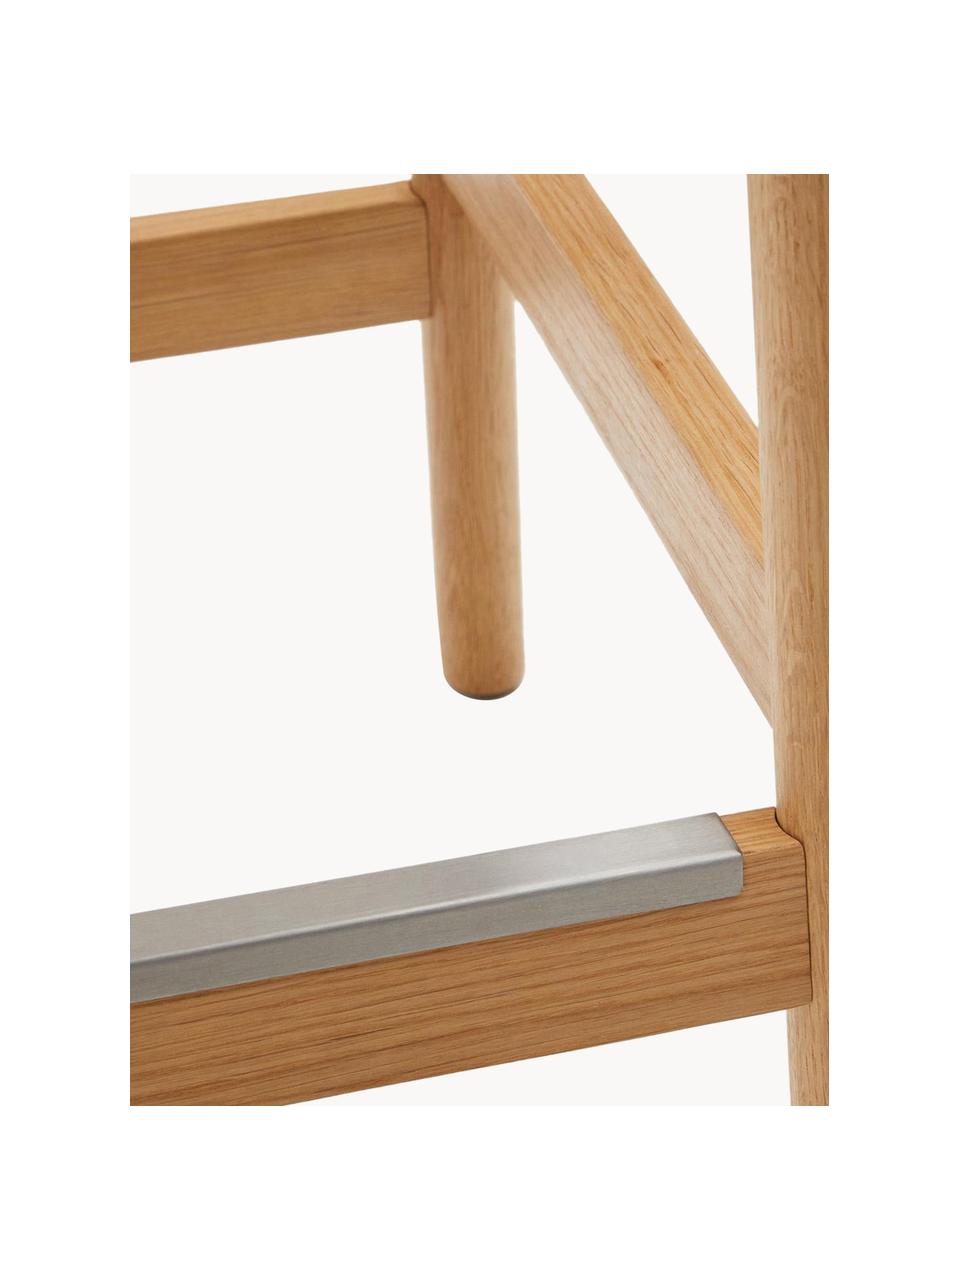 Eichenholz-Hocker Yalia mit geflochtener Sitzfläche, Sitzfläche: Papierseil, Gestell: Eichenholz, lackiert Dies, Beige, Eichenholz hell, B 45 x H 66 cm